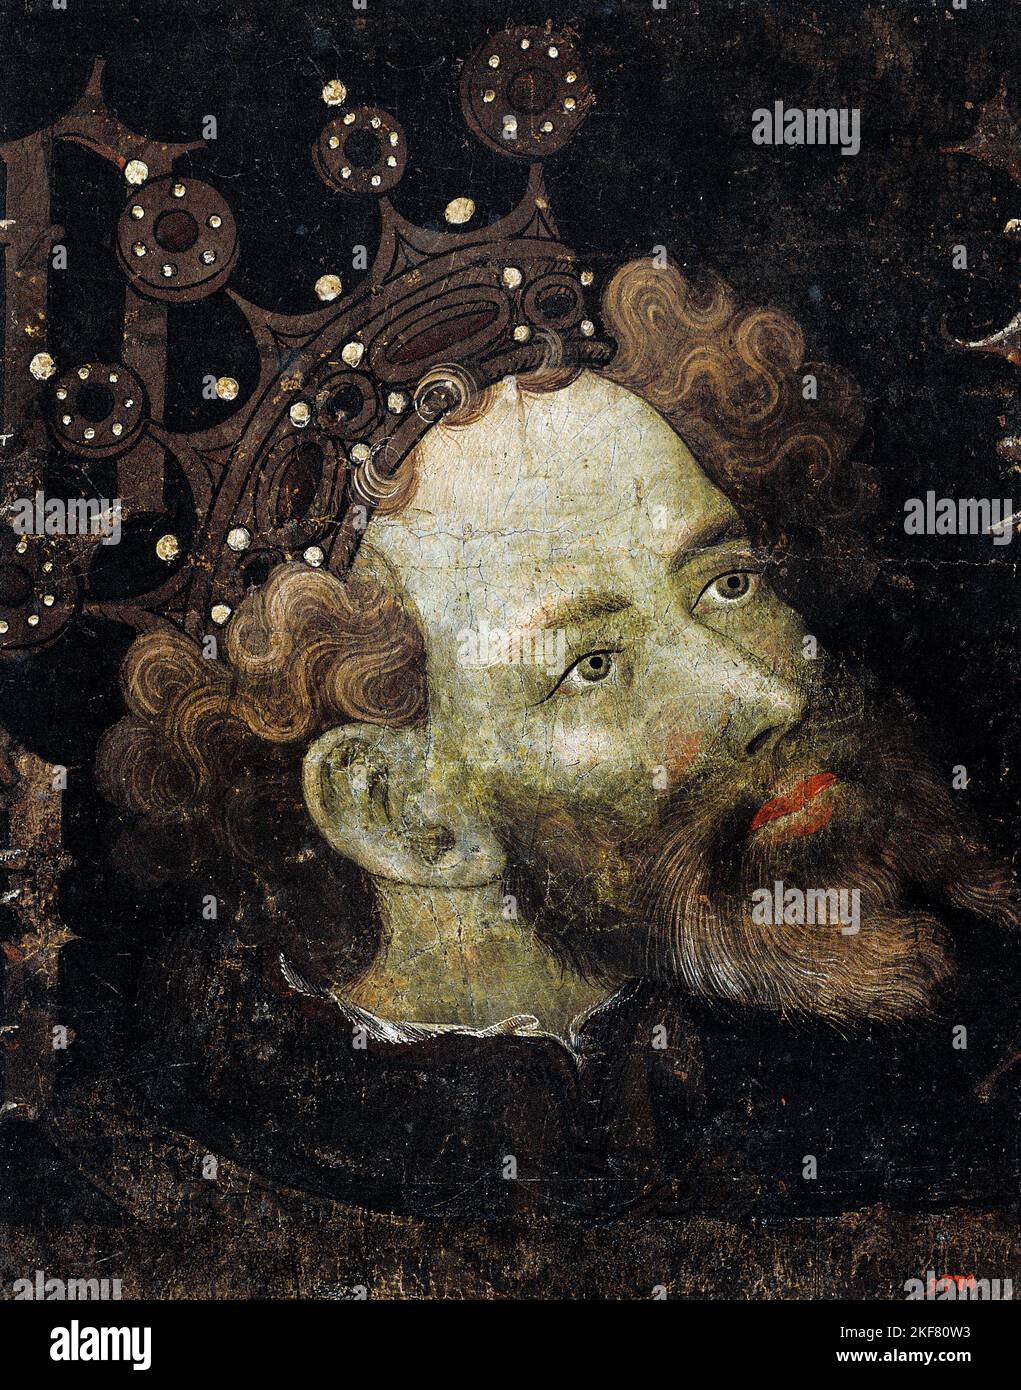 Jaume Mateu; Peter IV the Ceremonious; 1427; Tempera on Wood; Museu Nacional d'Art de Catalunya, Barcelona, Spain. Stock Photo